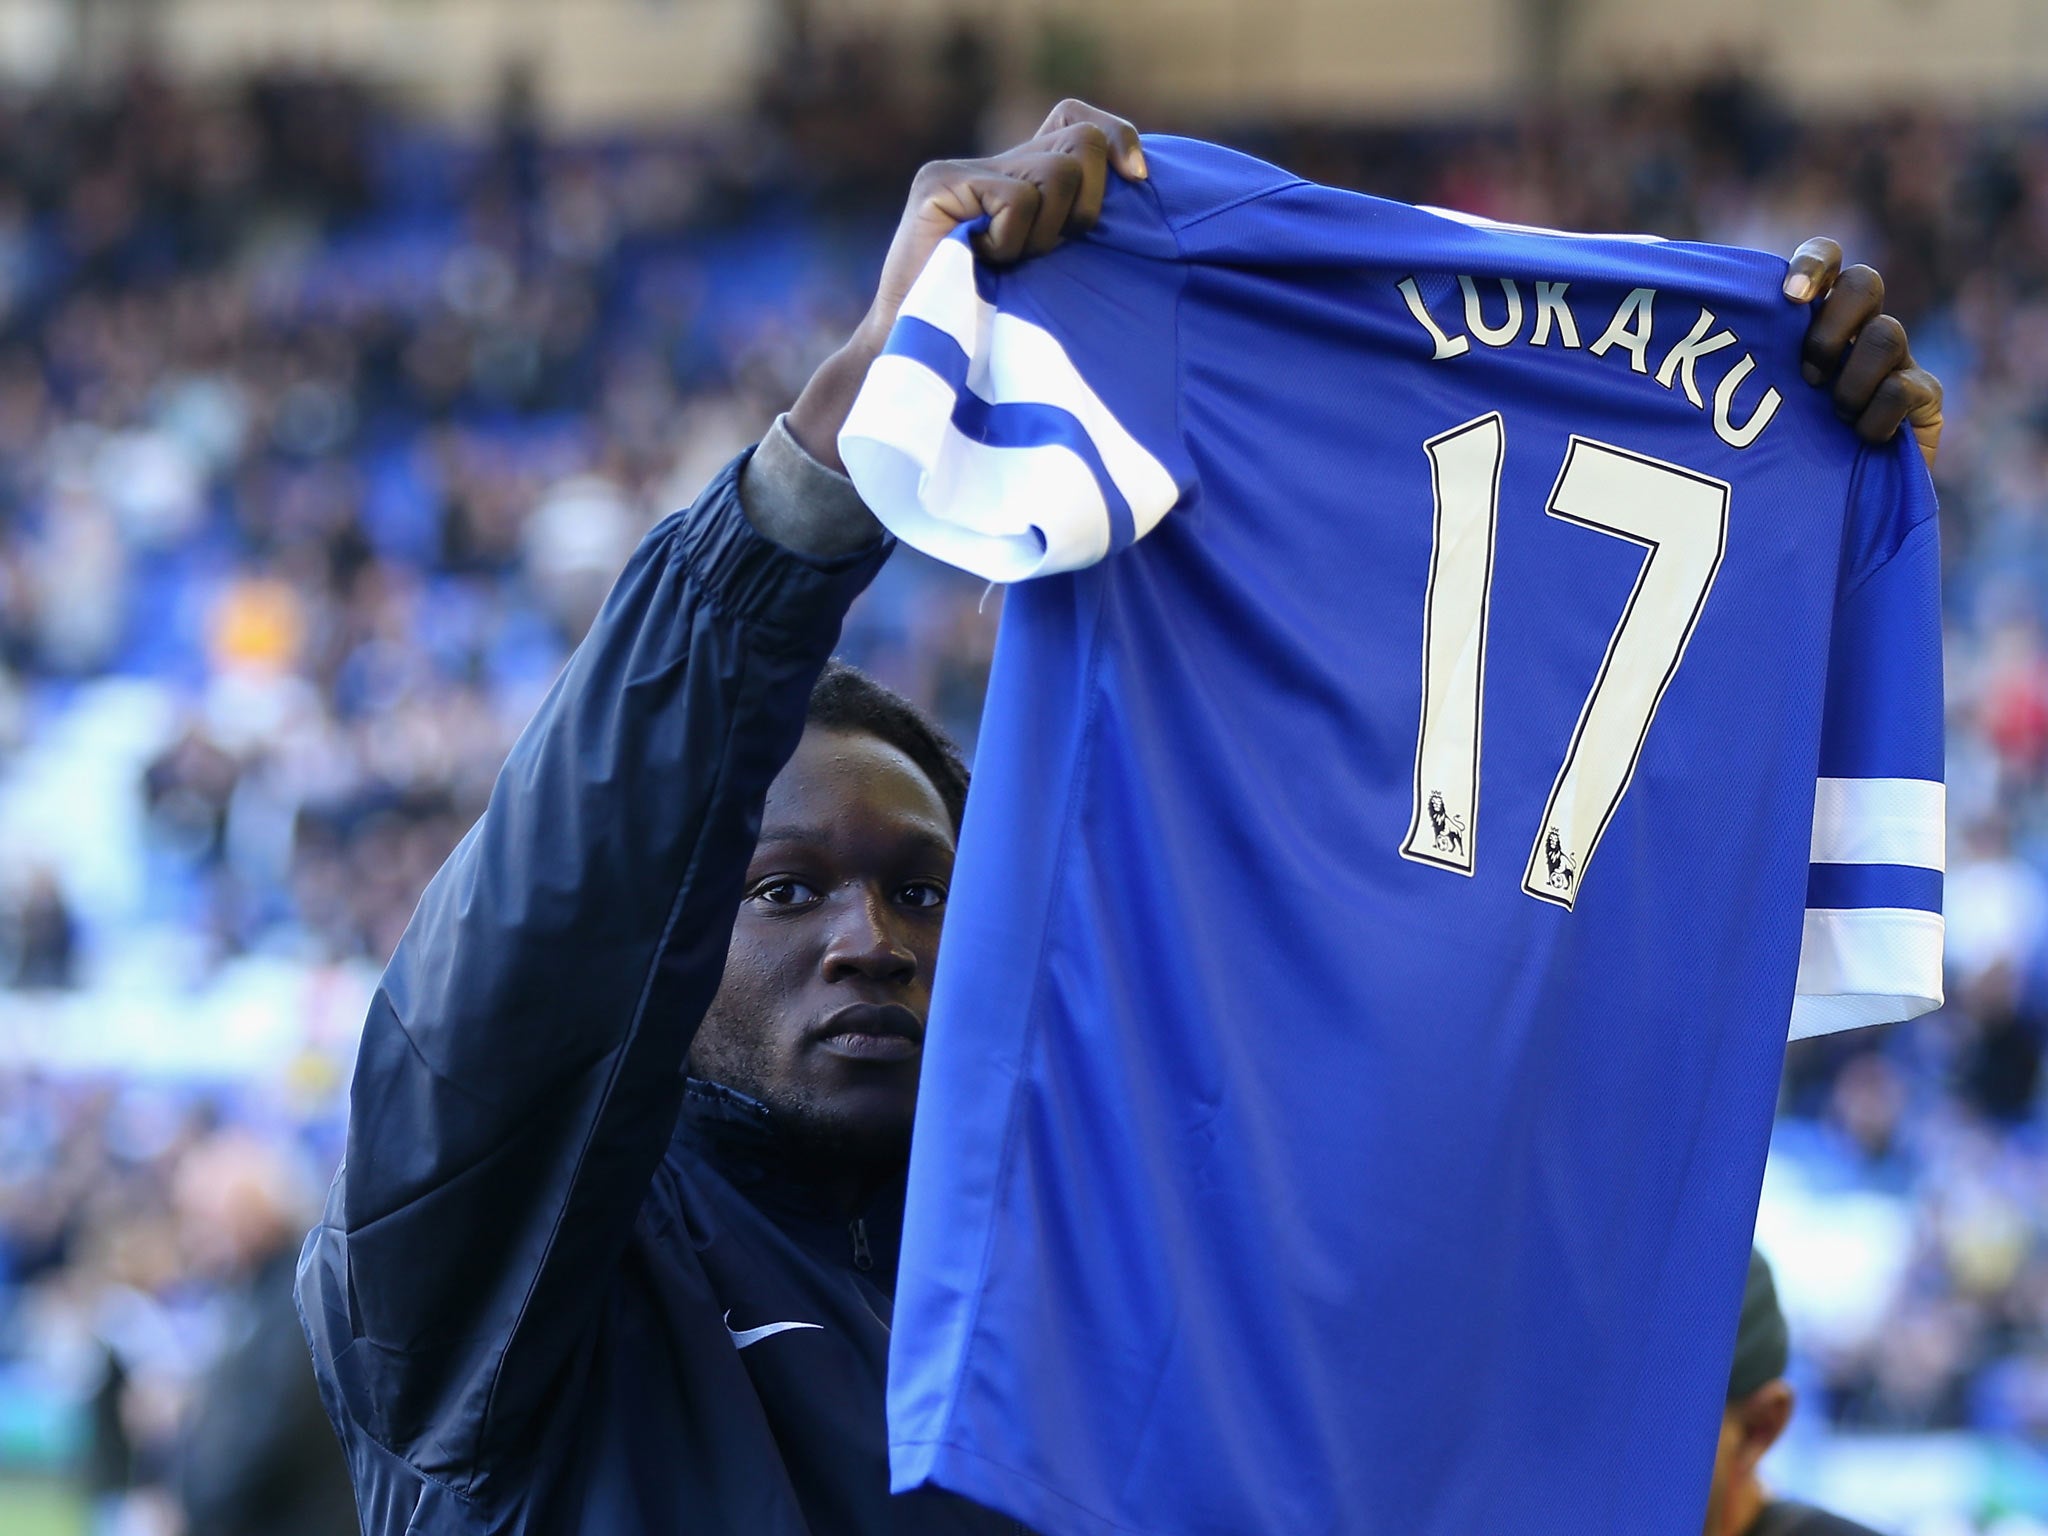 Romelu Lukaku during his presentation to Everton fans